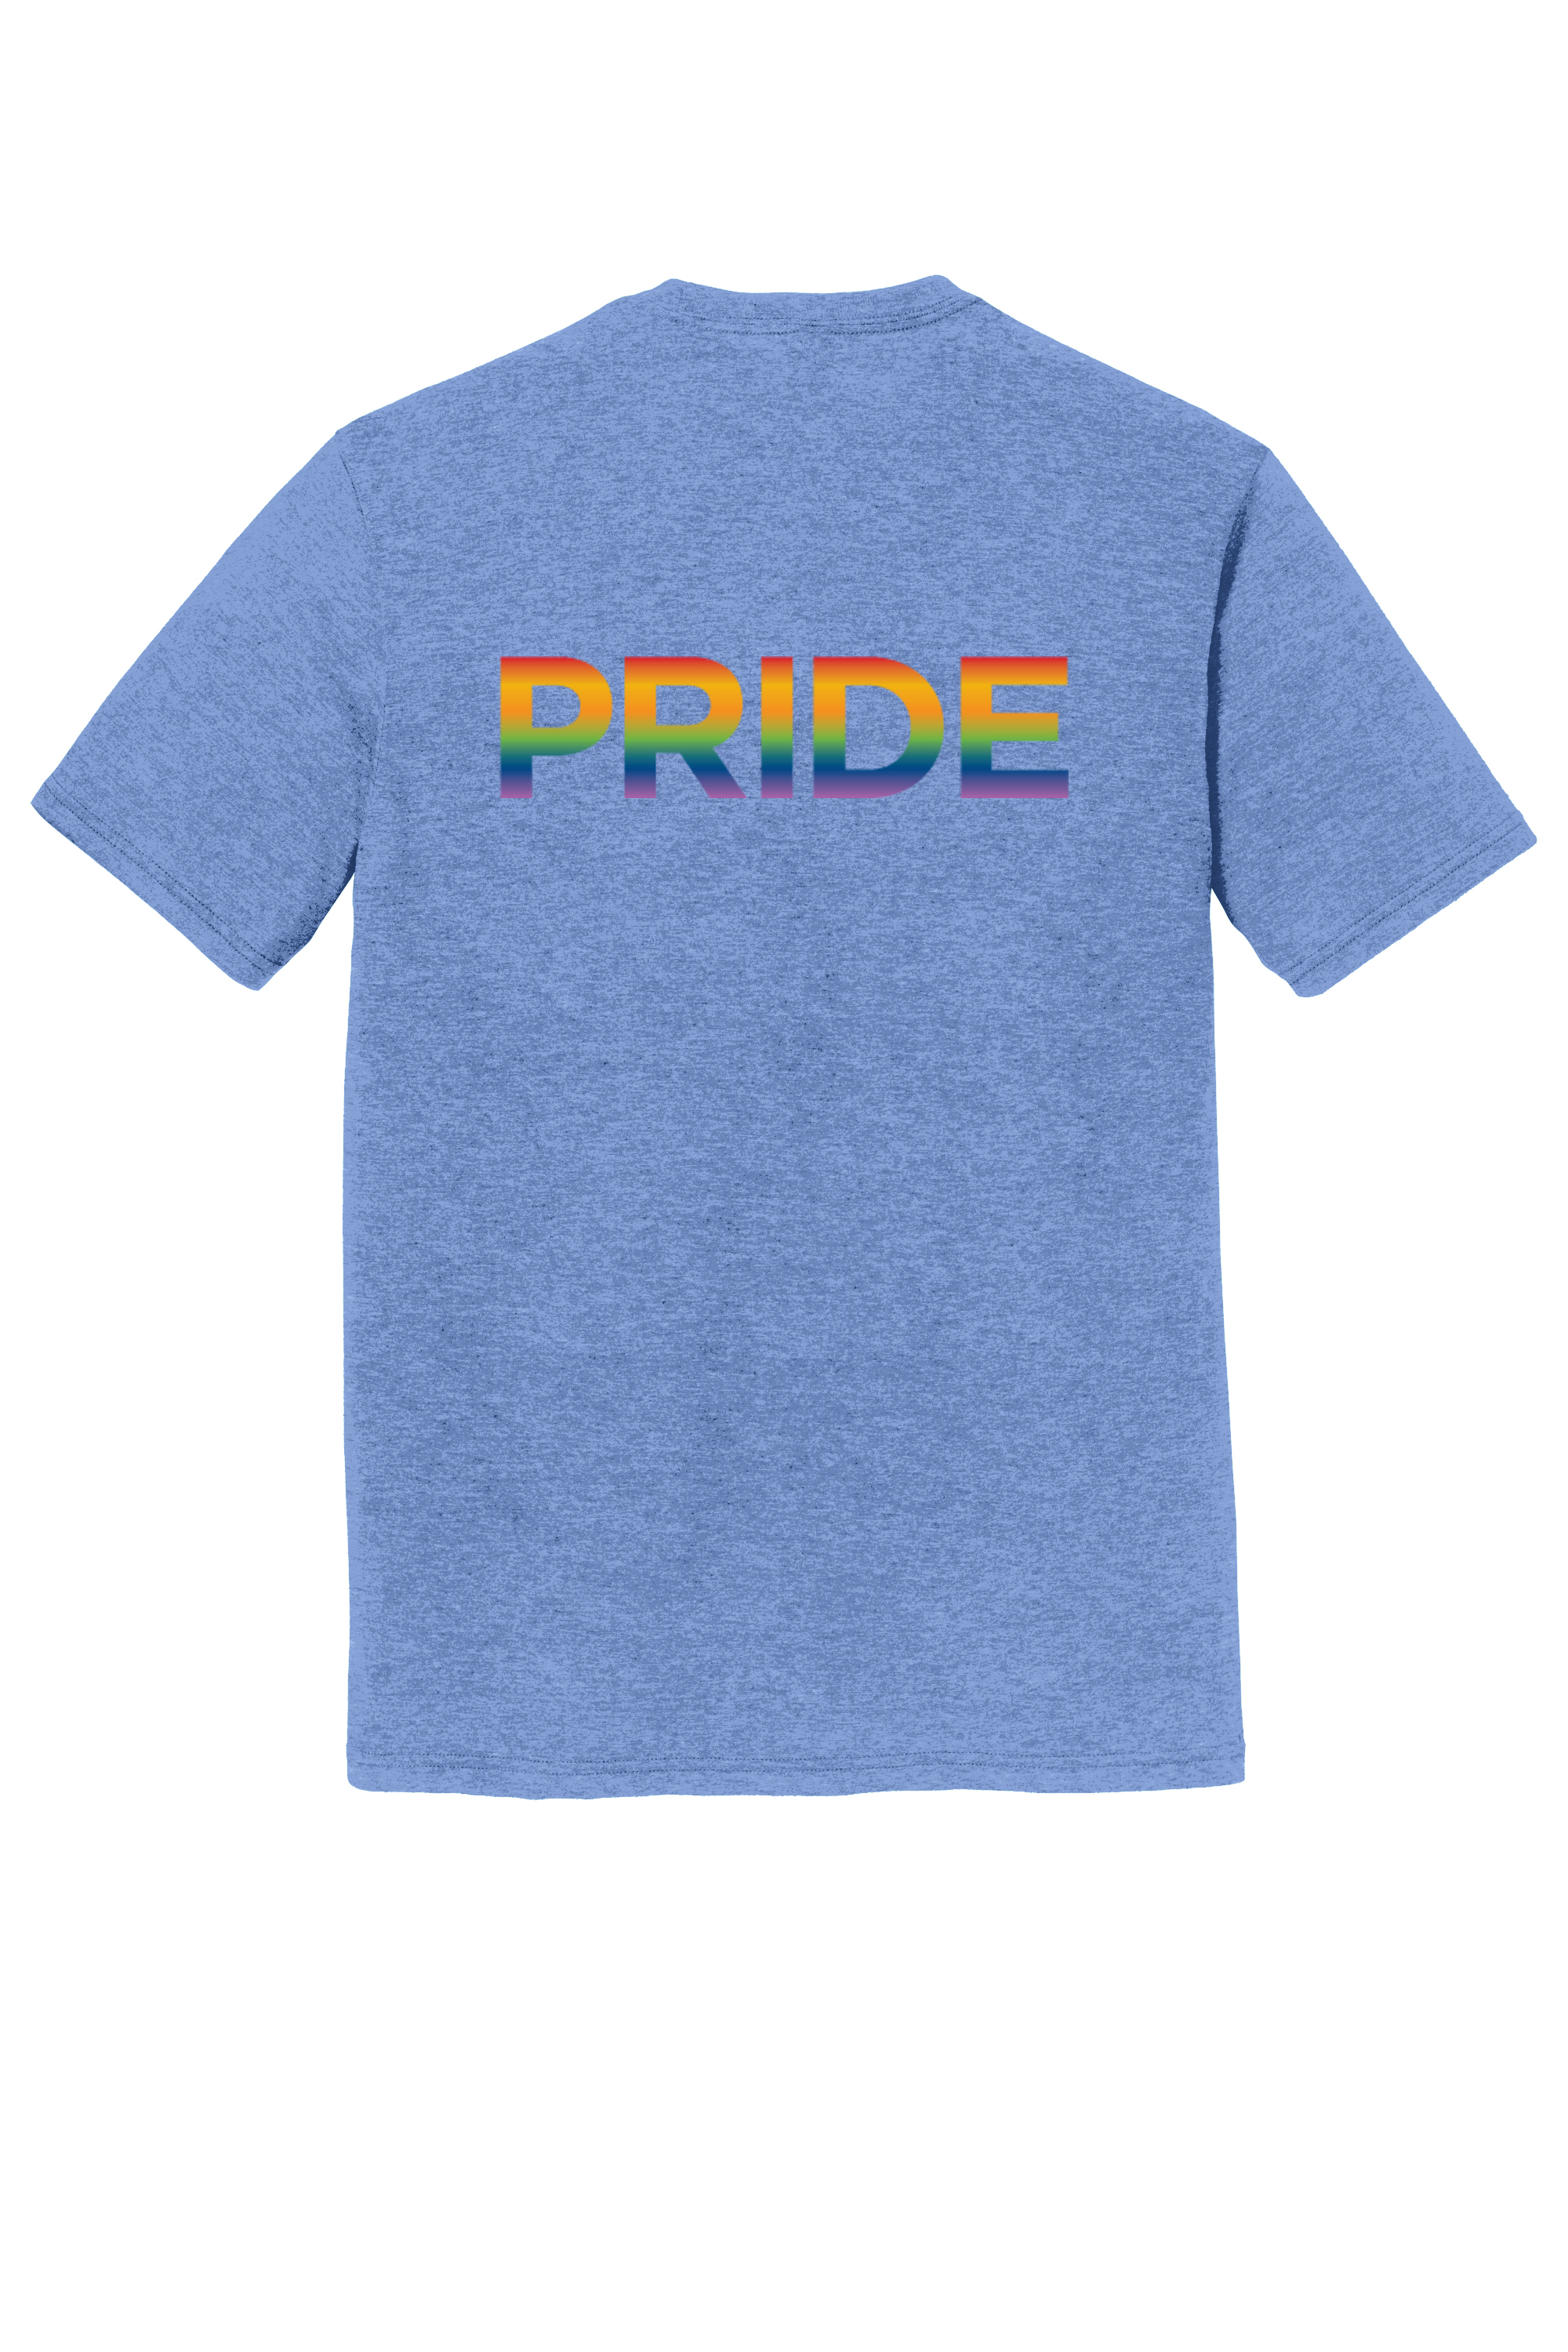 Ochsner PRIDE Unisex T-Shirt, Blue, large image number 1